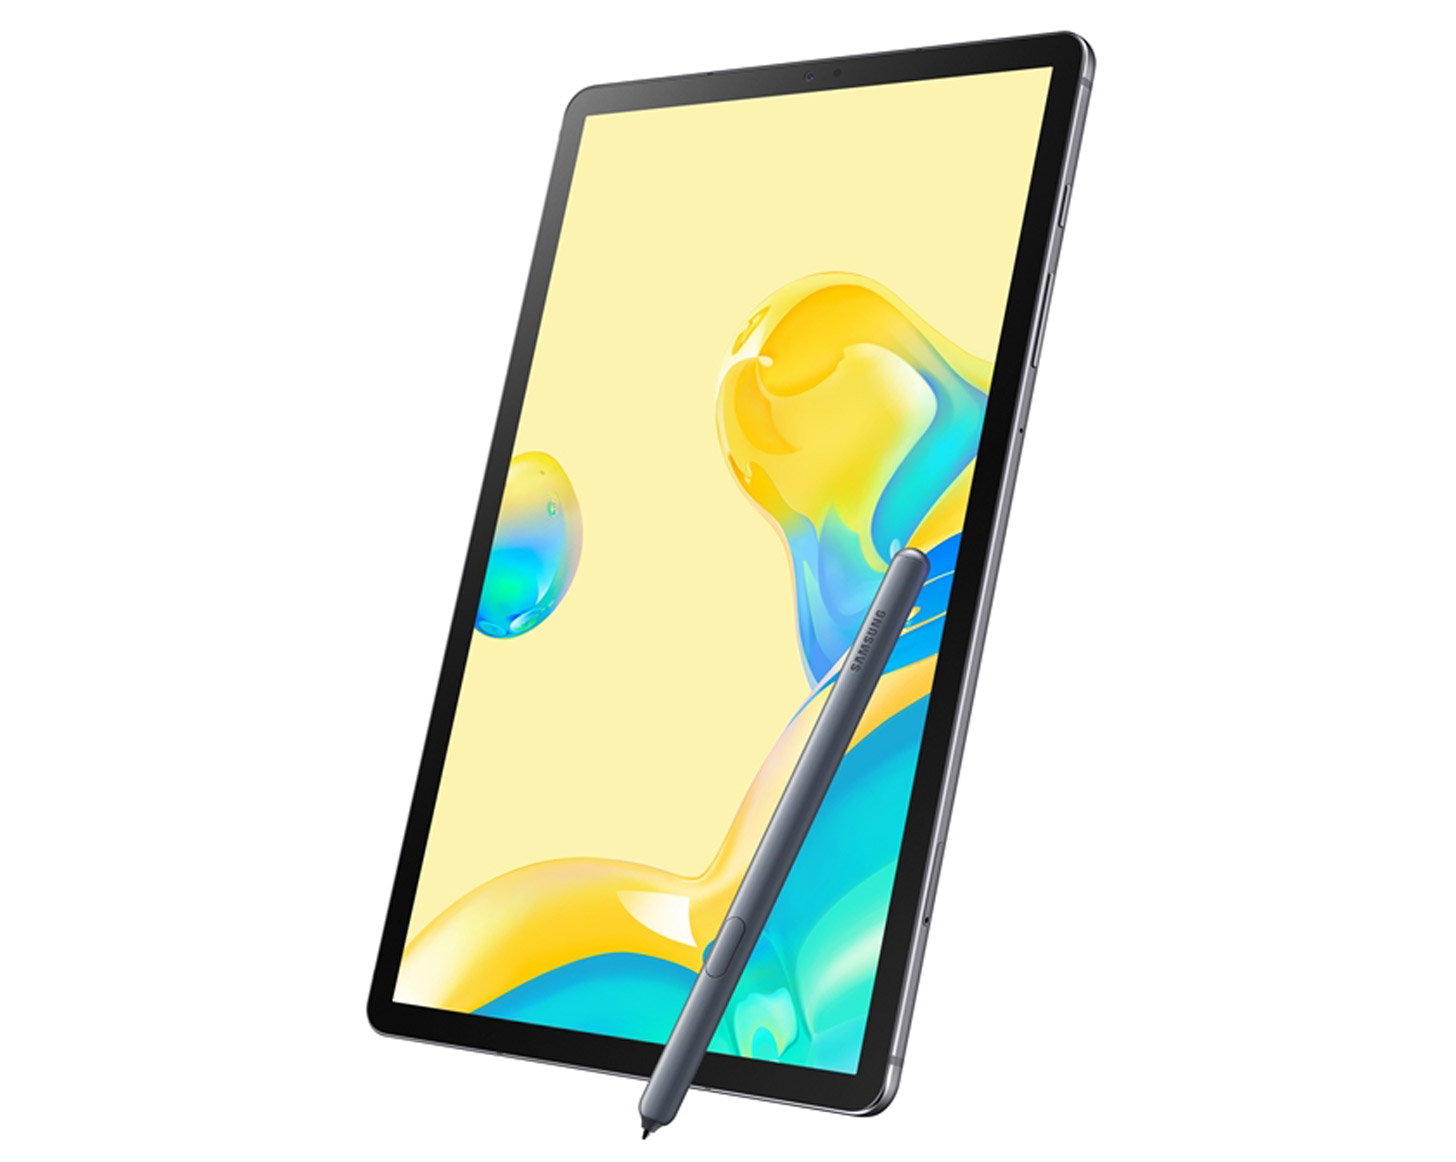 Galaxy Tab S6 5G diluncurkan minggu ini sebagai tablet 5G pertama di dunia